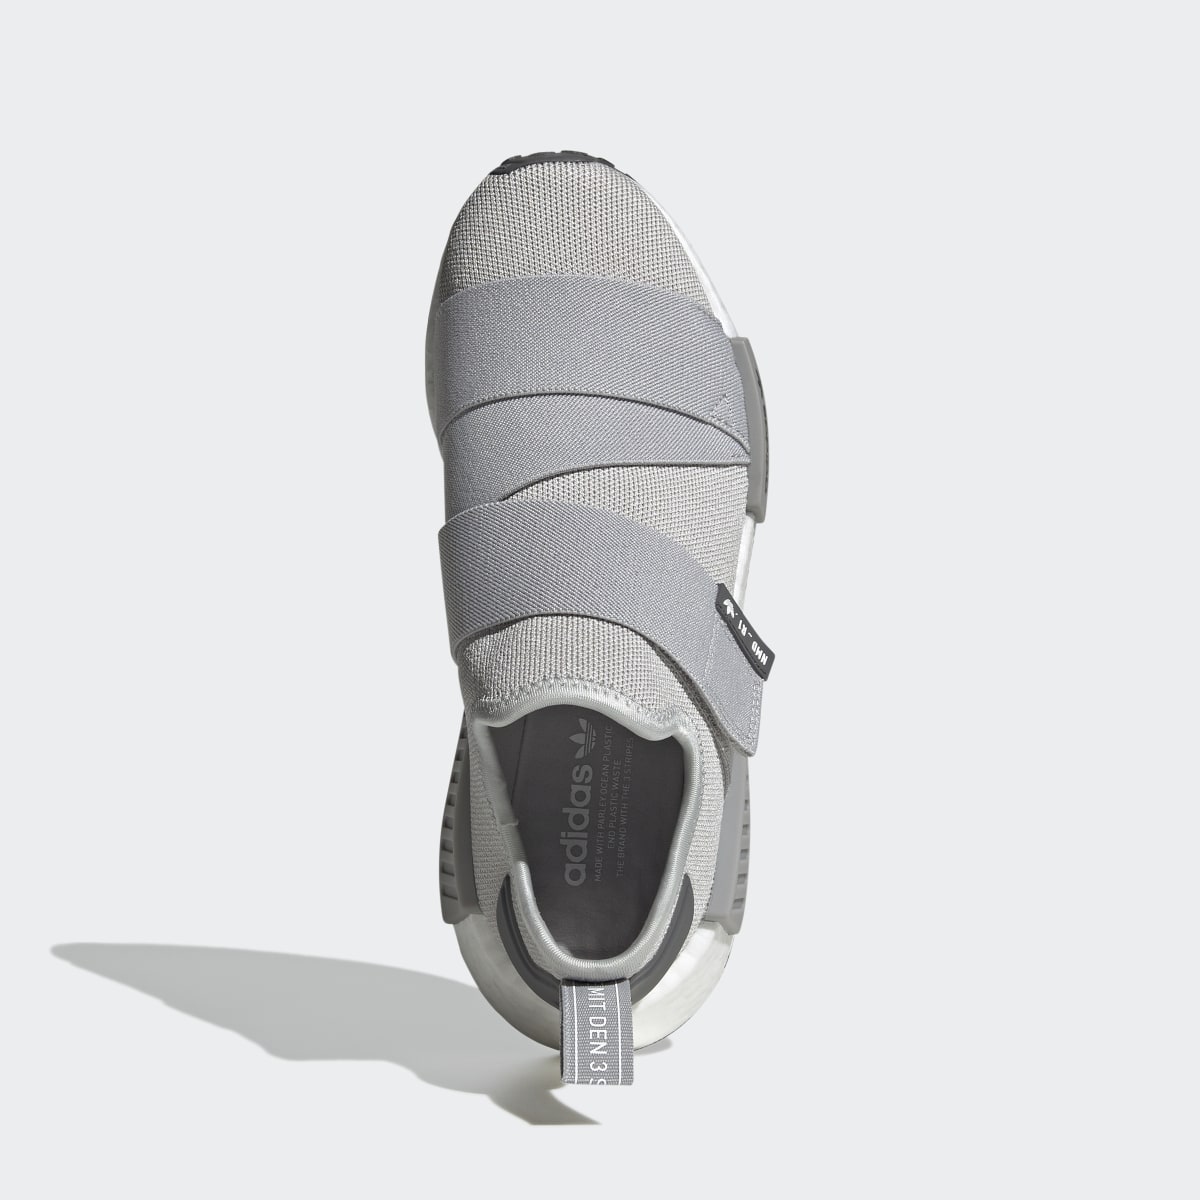 Adidas NMD_R1 Strap Schuh. 6